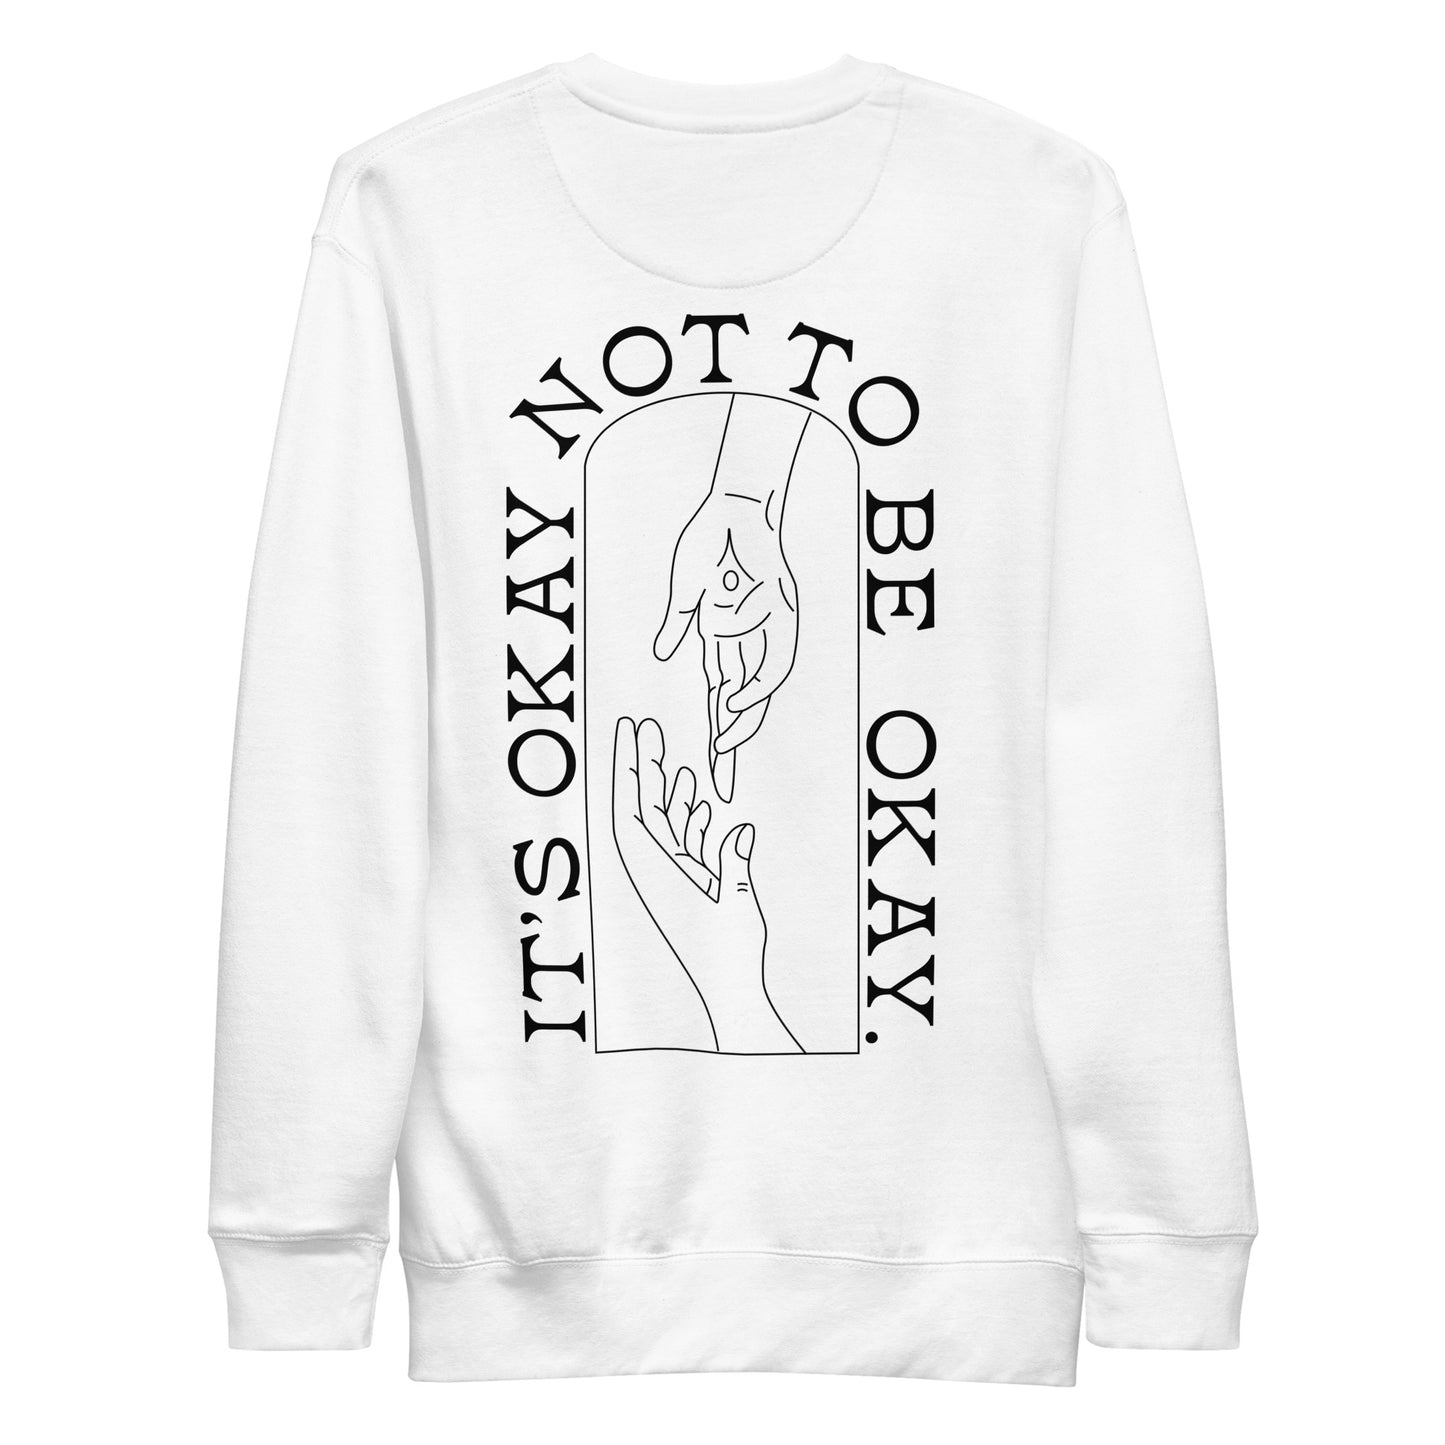 It's Okay Not To Be Okay - Unisex Crewneck Sweatshirt